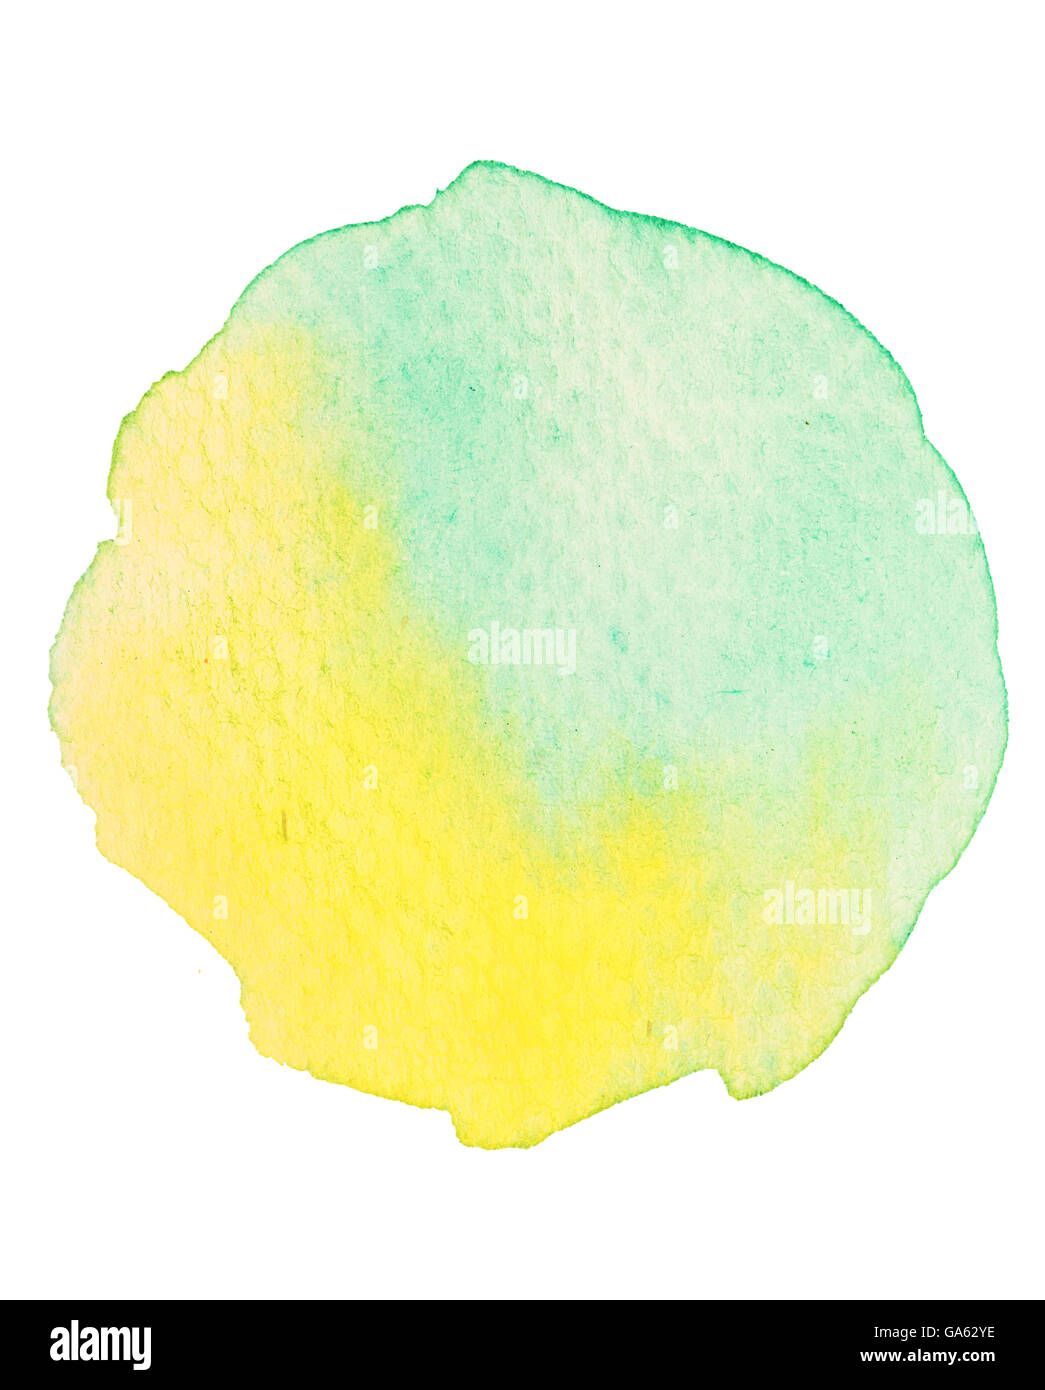 Grün, gelb runden Kreis Aquarell isoliert auf weißem Hintergrund Stockfoto